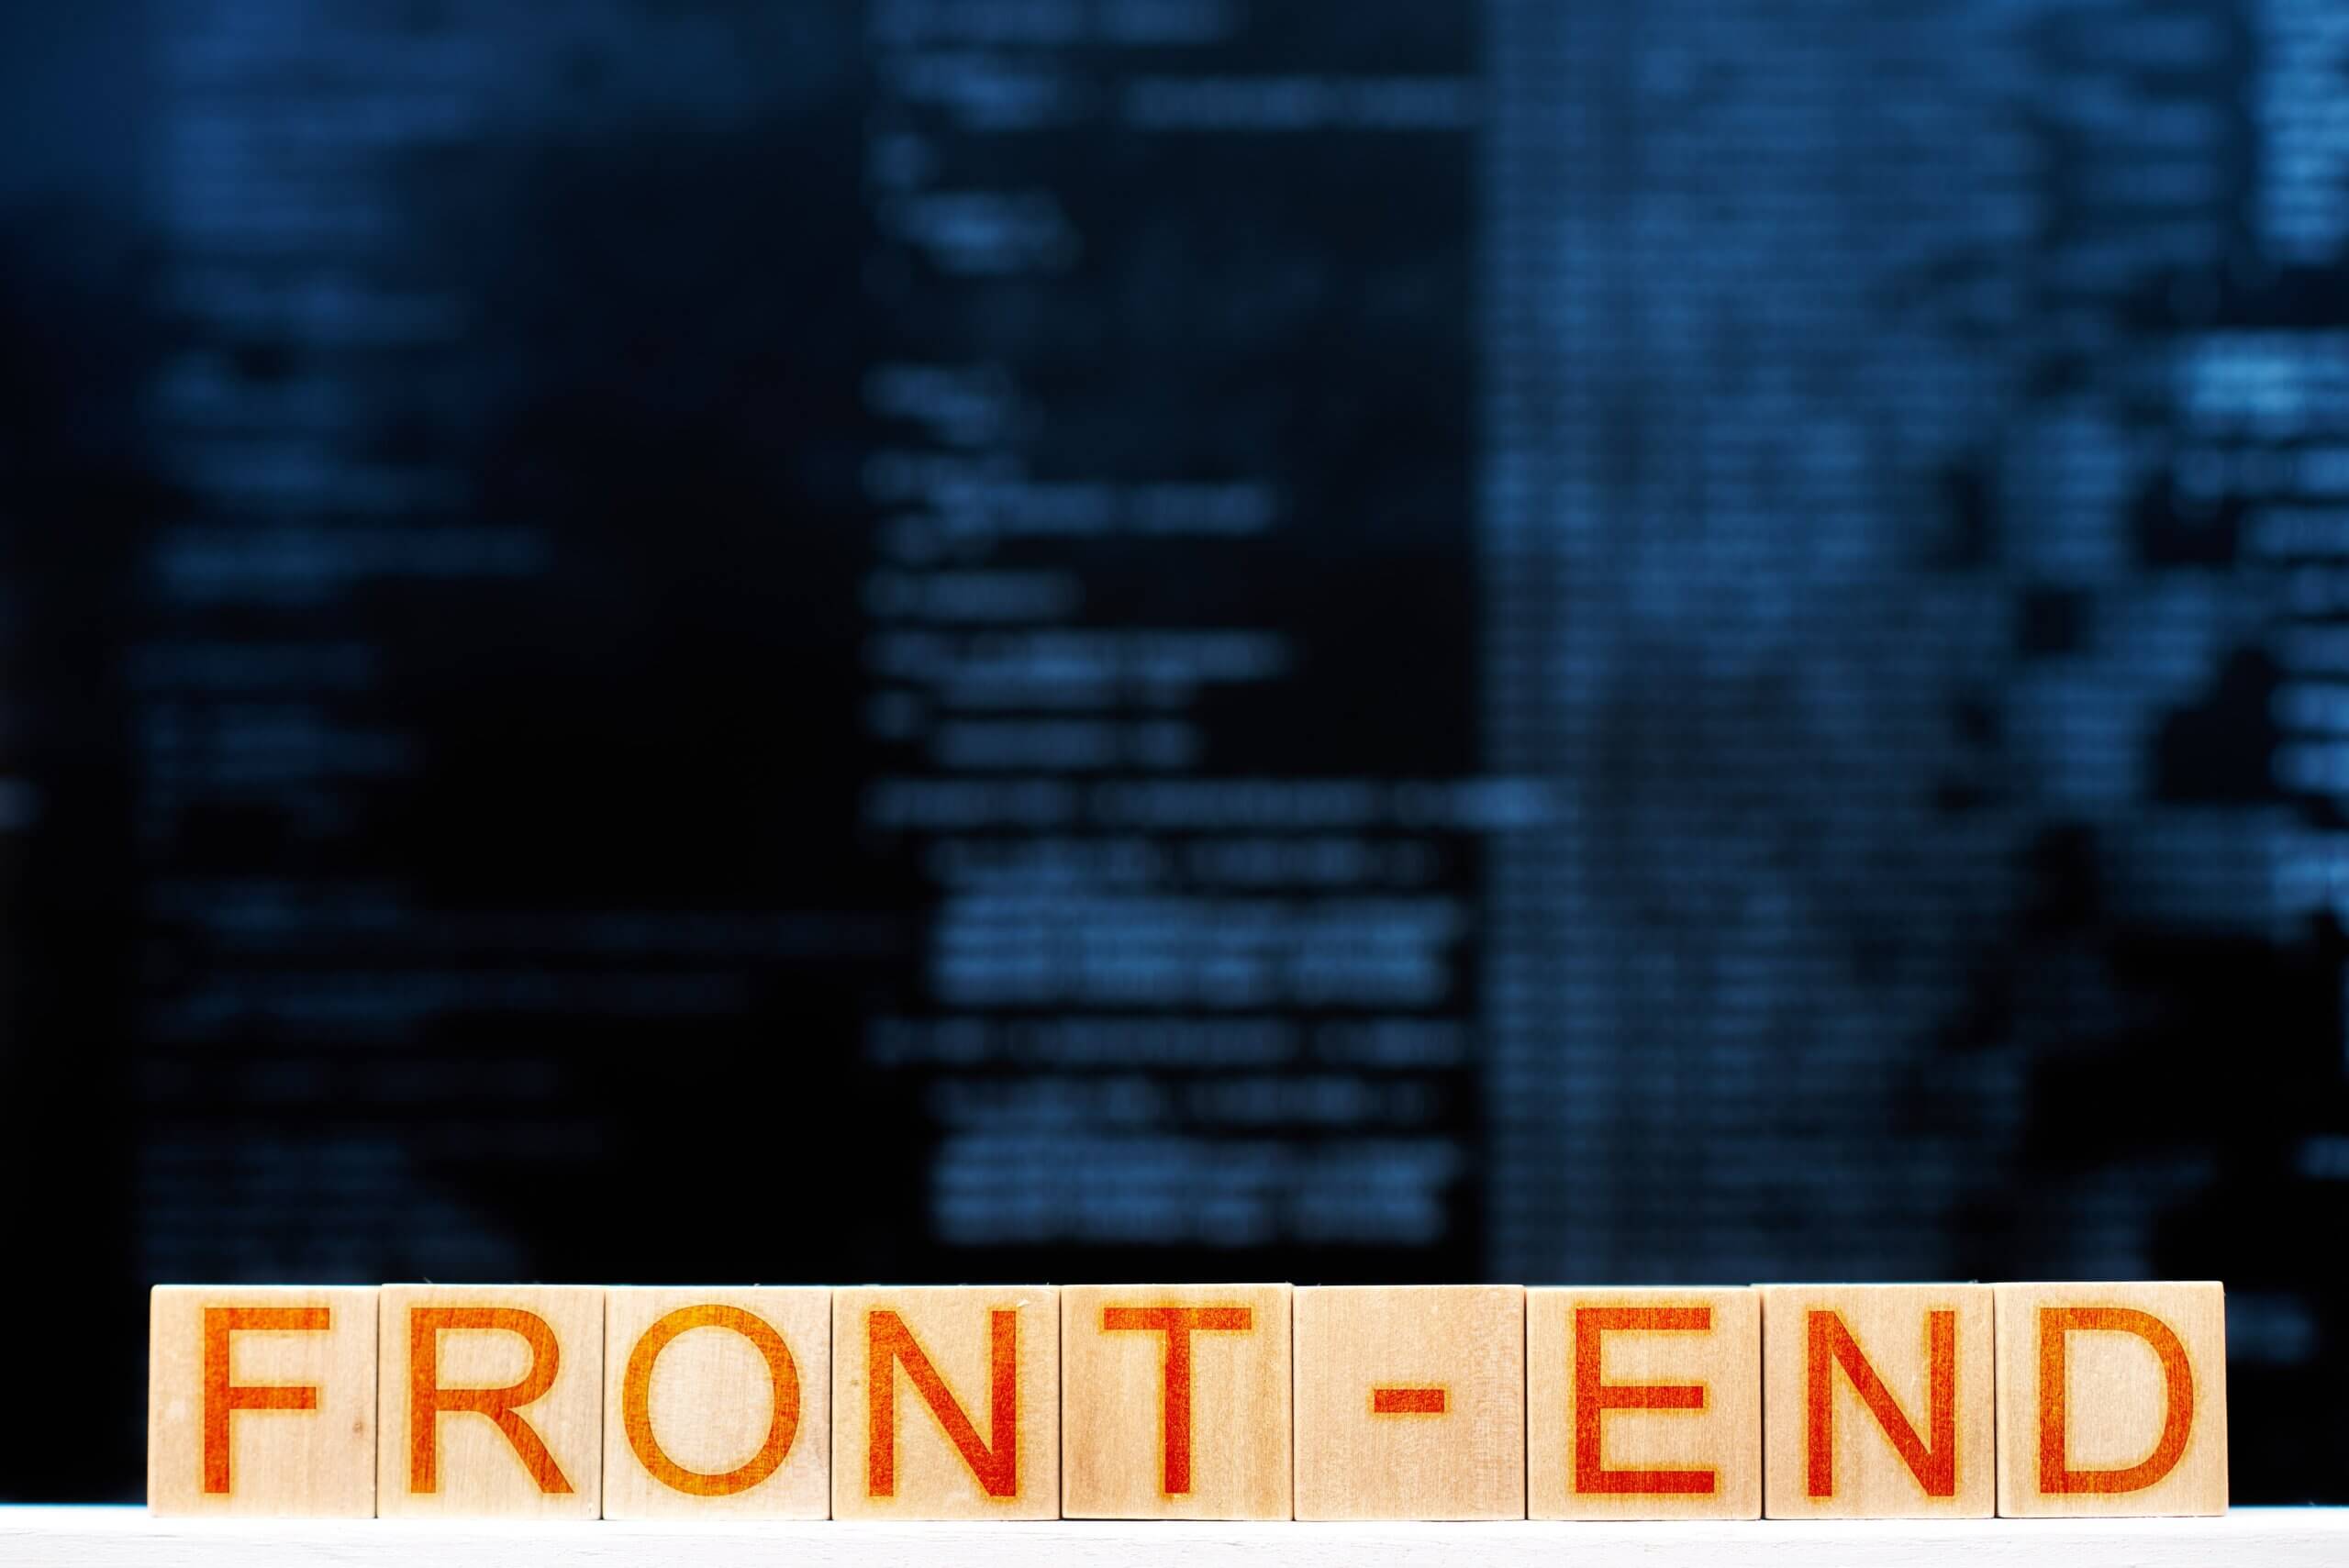 Capa do Artigo desenvolvimento front-end onde se lê a palavra "front-end" escrita em um quadrado de madeira e letras vermelhas, atrás há códigos de programação embaçados.